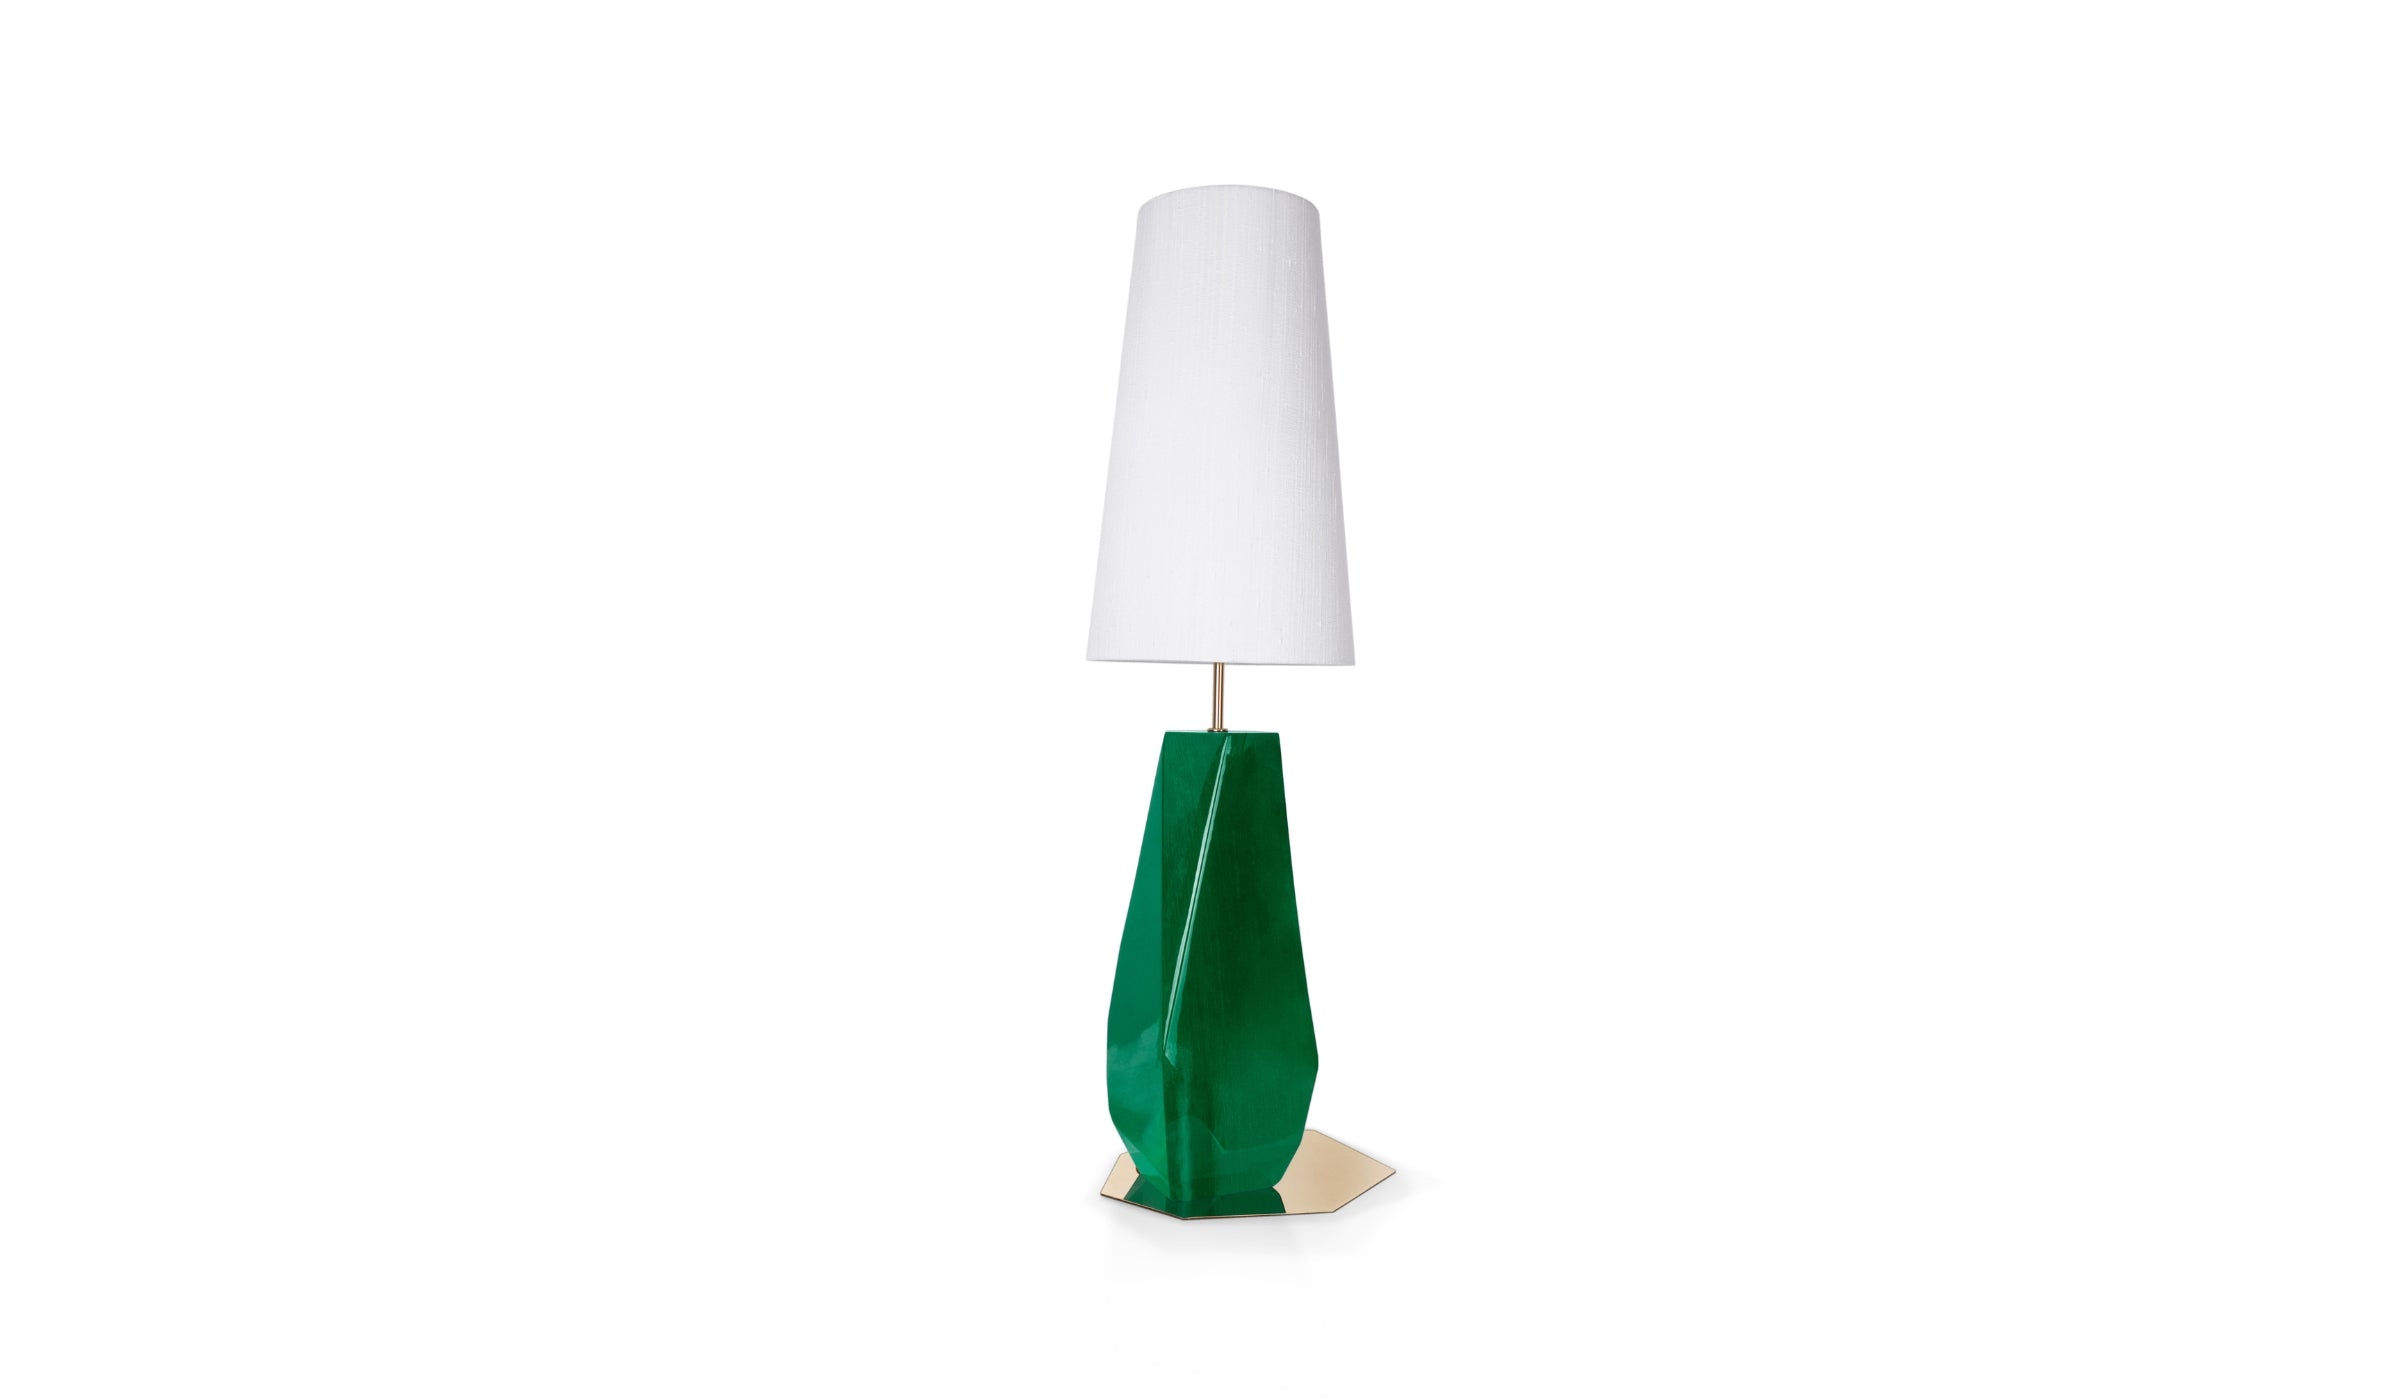 Feel Big - Lampe de table verte, éclairage design en fibre de verre, feuilles d'argent, acier inoxydable et soie